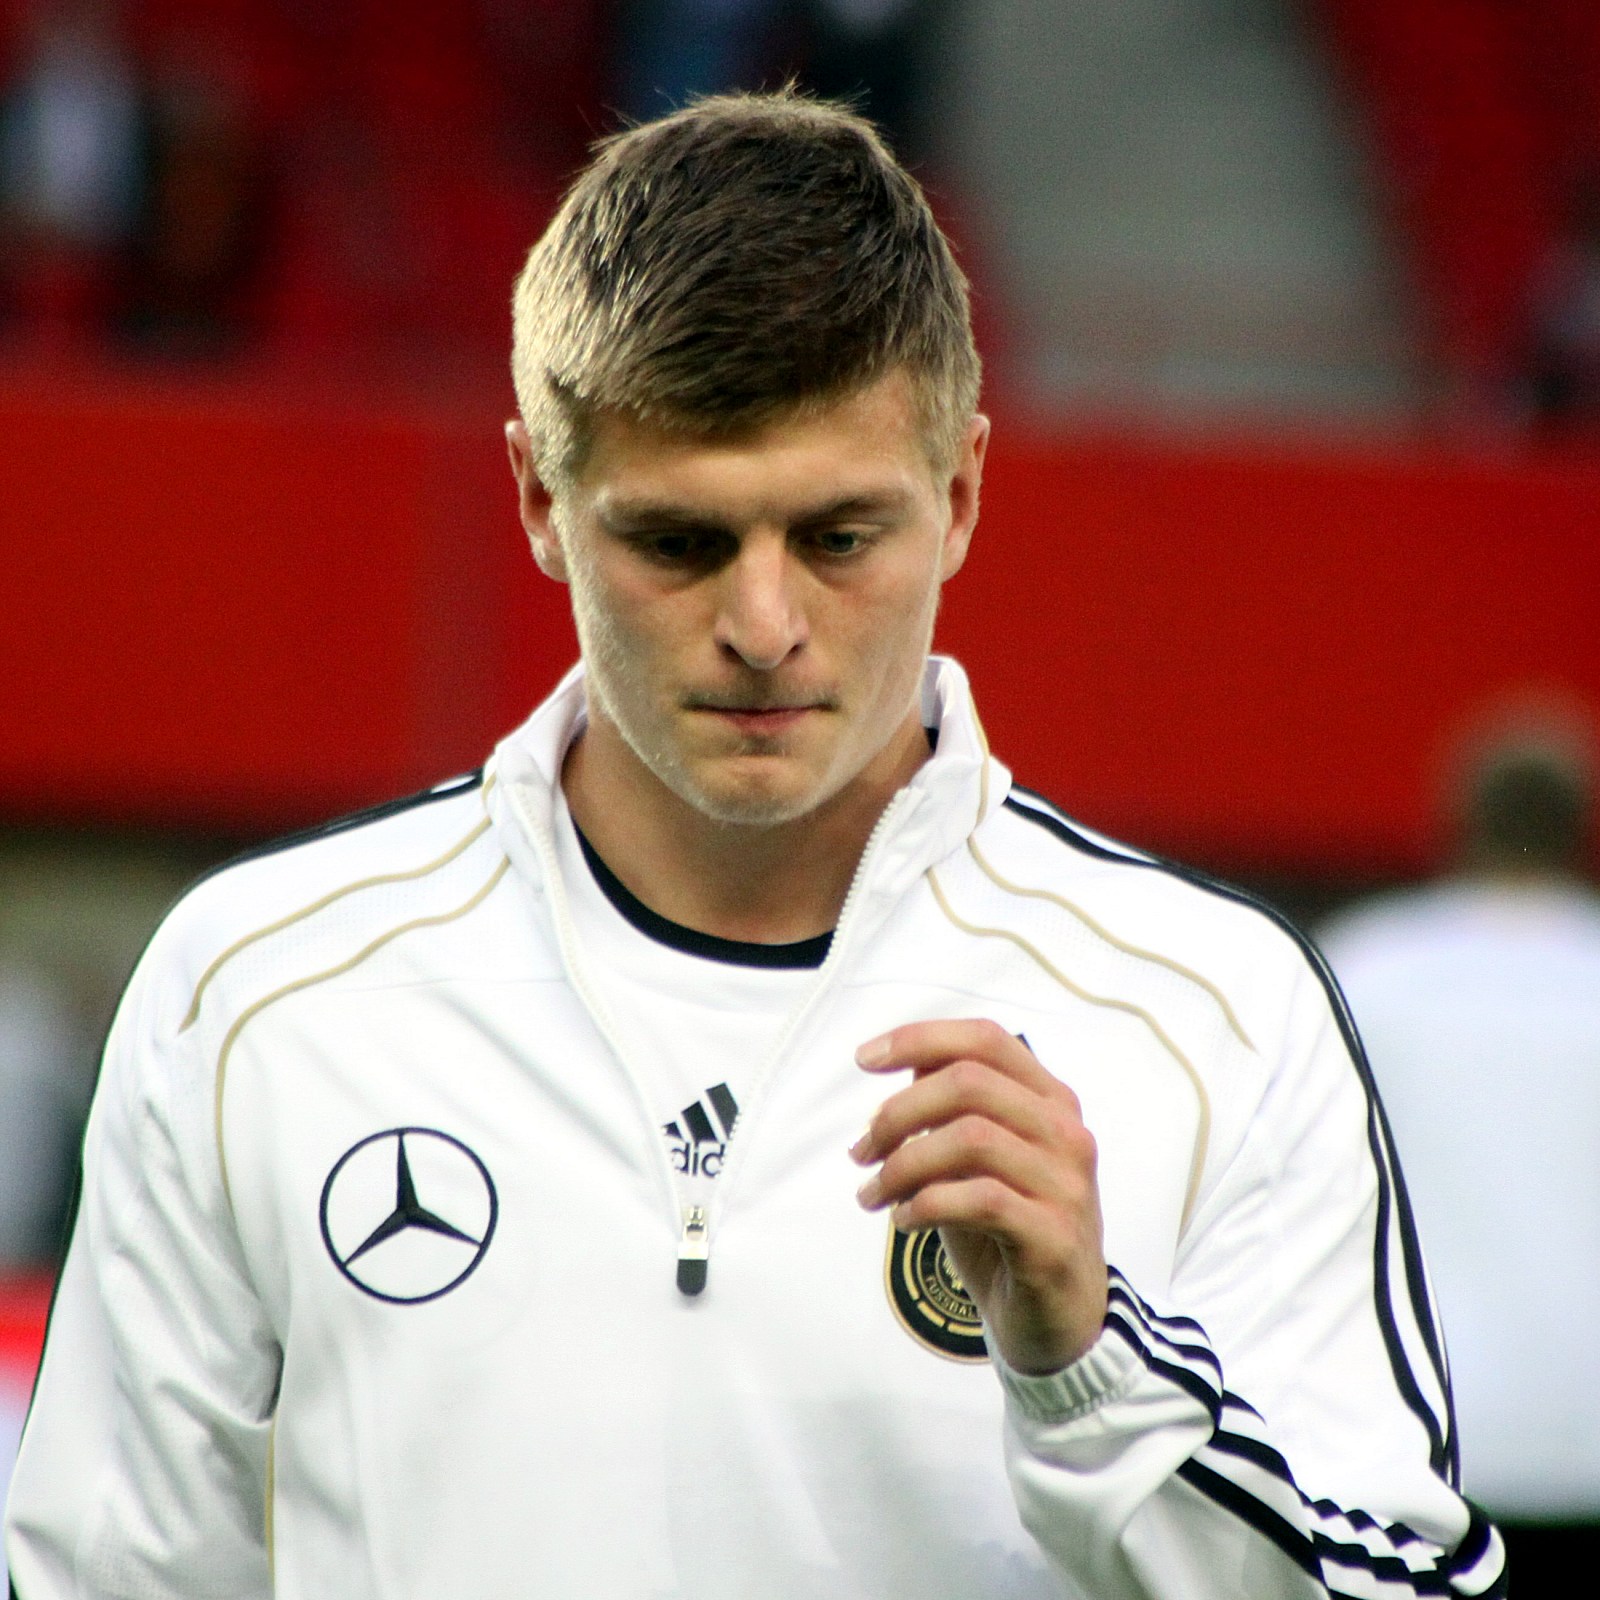 Toni_Kroos,_Germany_national_football_team_(01)